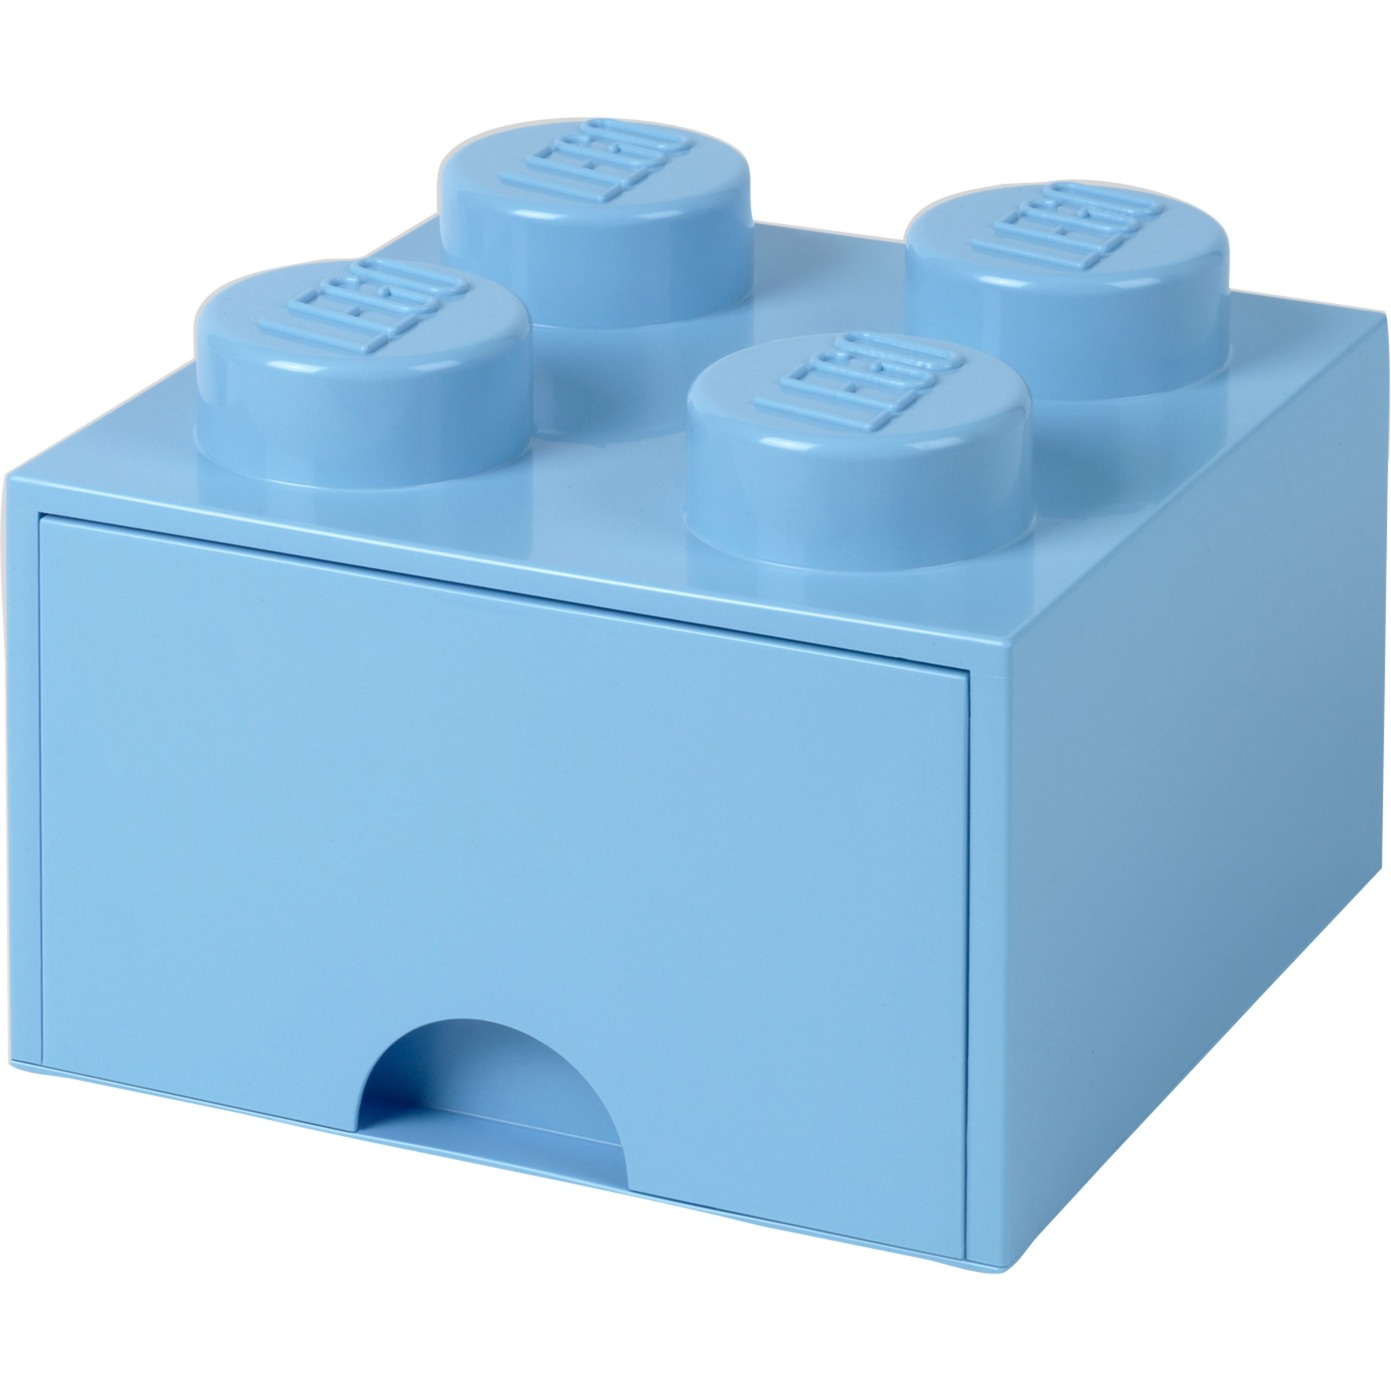 Image of Alternate - LEGO Brick Drawer 4 hellblau, Aufbewahrungsbox online einkaufen bei Alternate